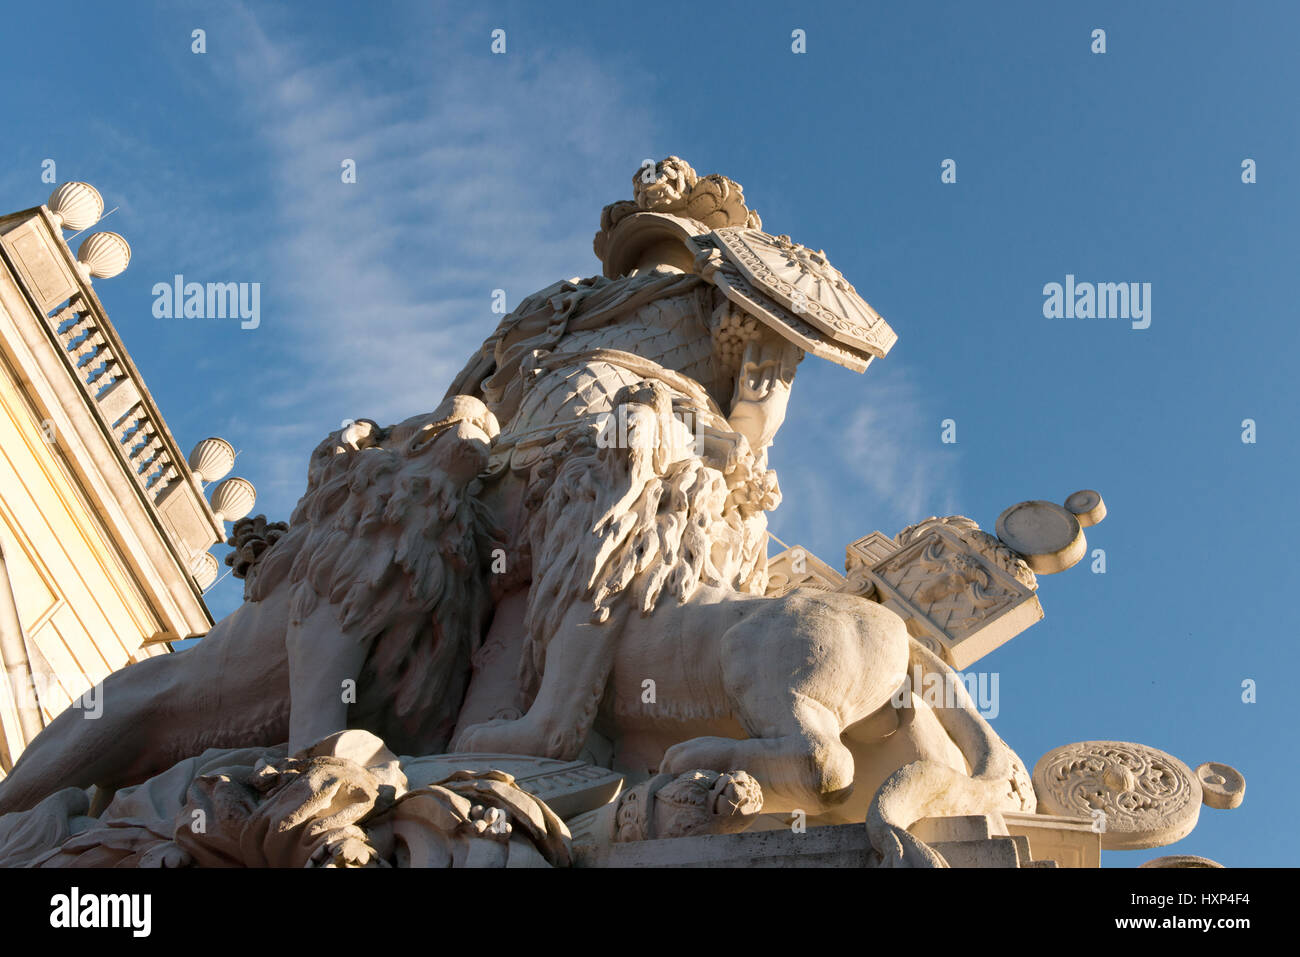 Statuen der Gloriette bei Schloss Schönbrunn, Wien Österreich Stock Photo